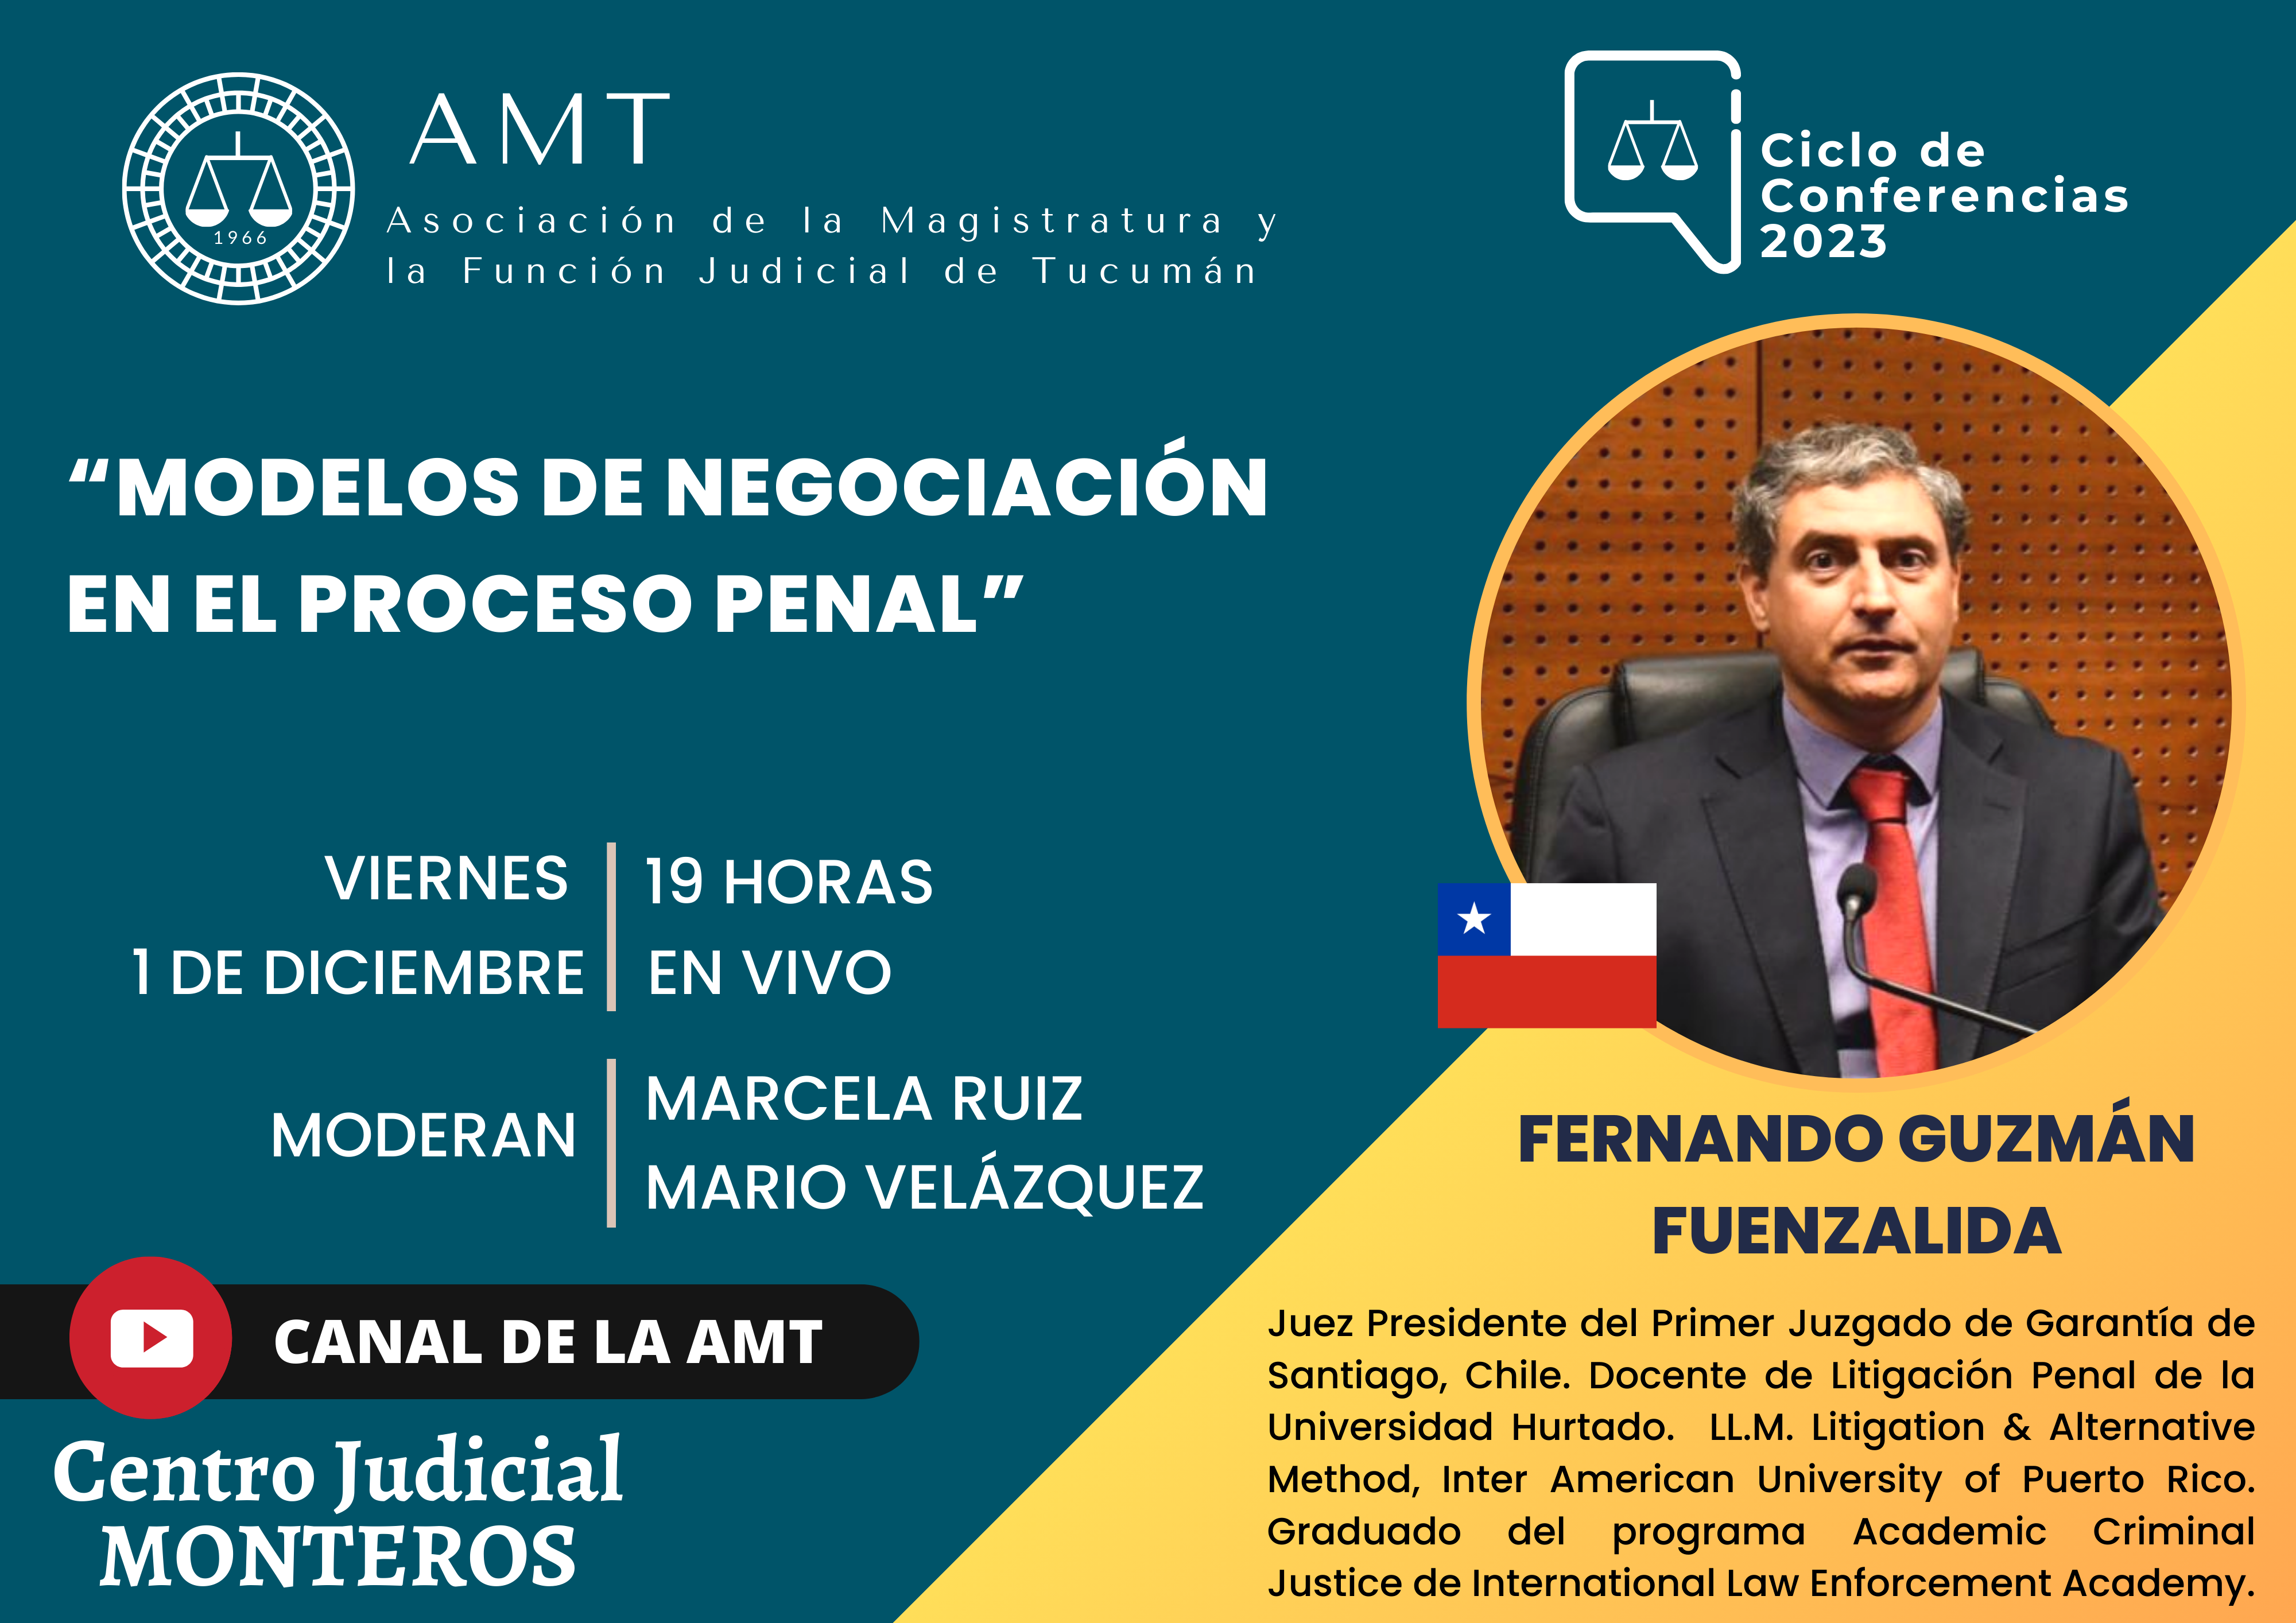 Vuelva a ver la conferencia de Fernando Guzmán Fuenzalida, “Modelos de negociación en el Proceso Penal”